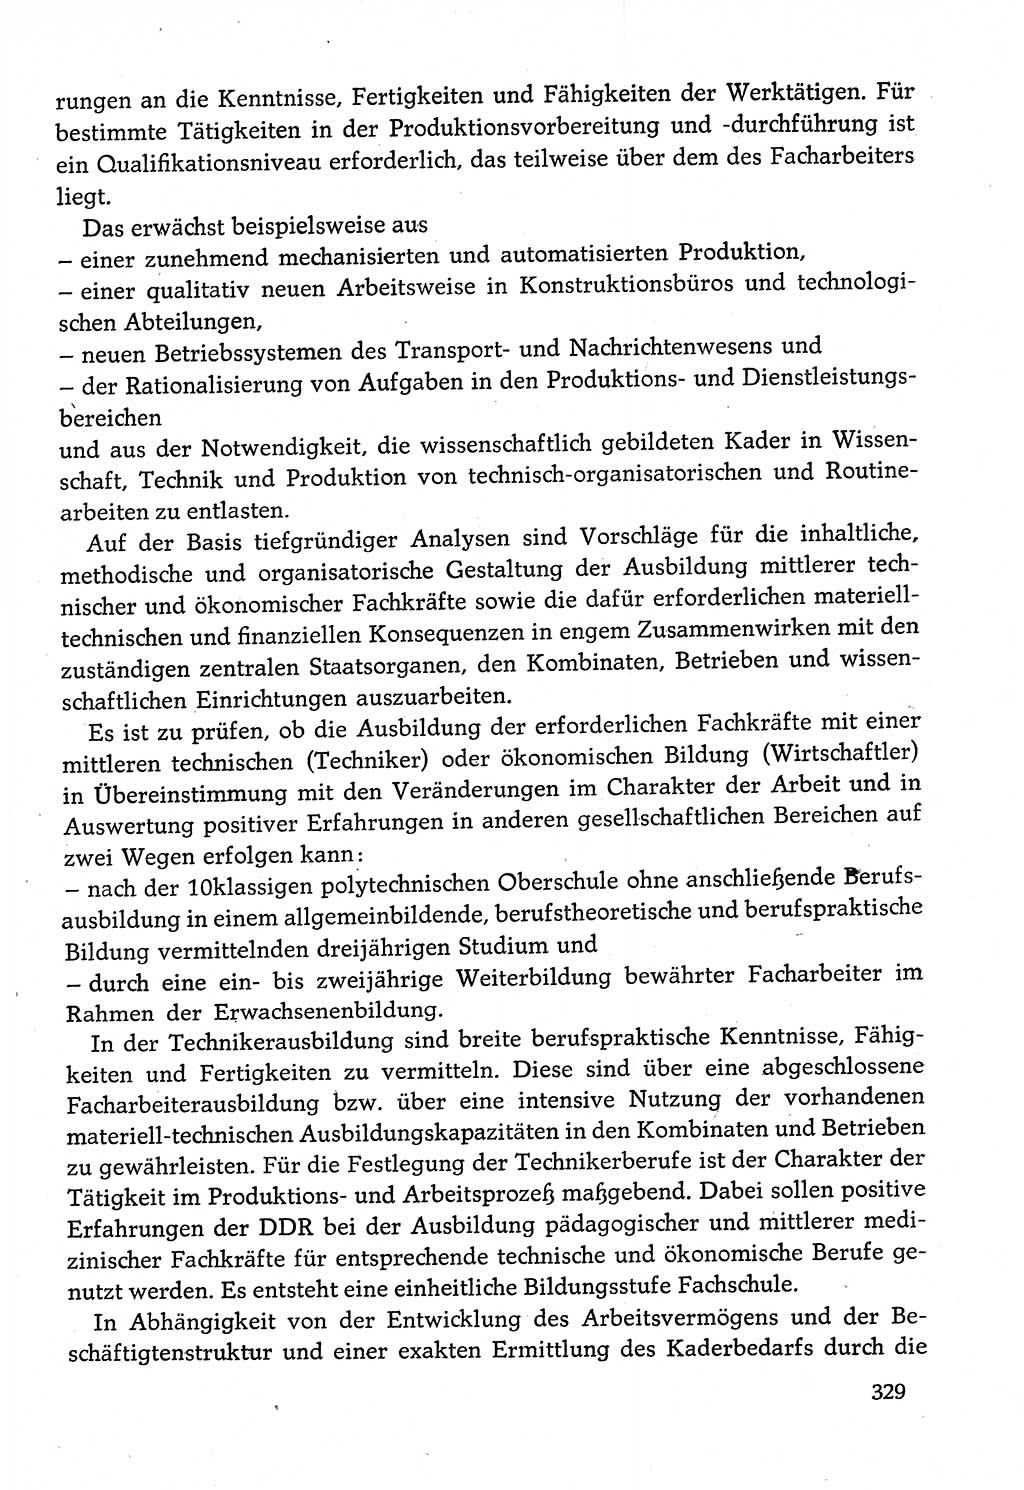 Dokumente der Sozialistischen Einheitspartei Deutschlands (SED) [Deutsche Demokratische Republik (DDR)] 1982-1983, Seite 329 (Dok. SED DDR 1982-1983, S. 329)